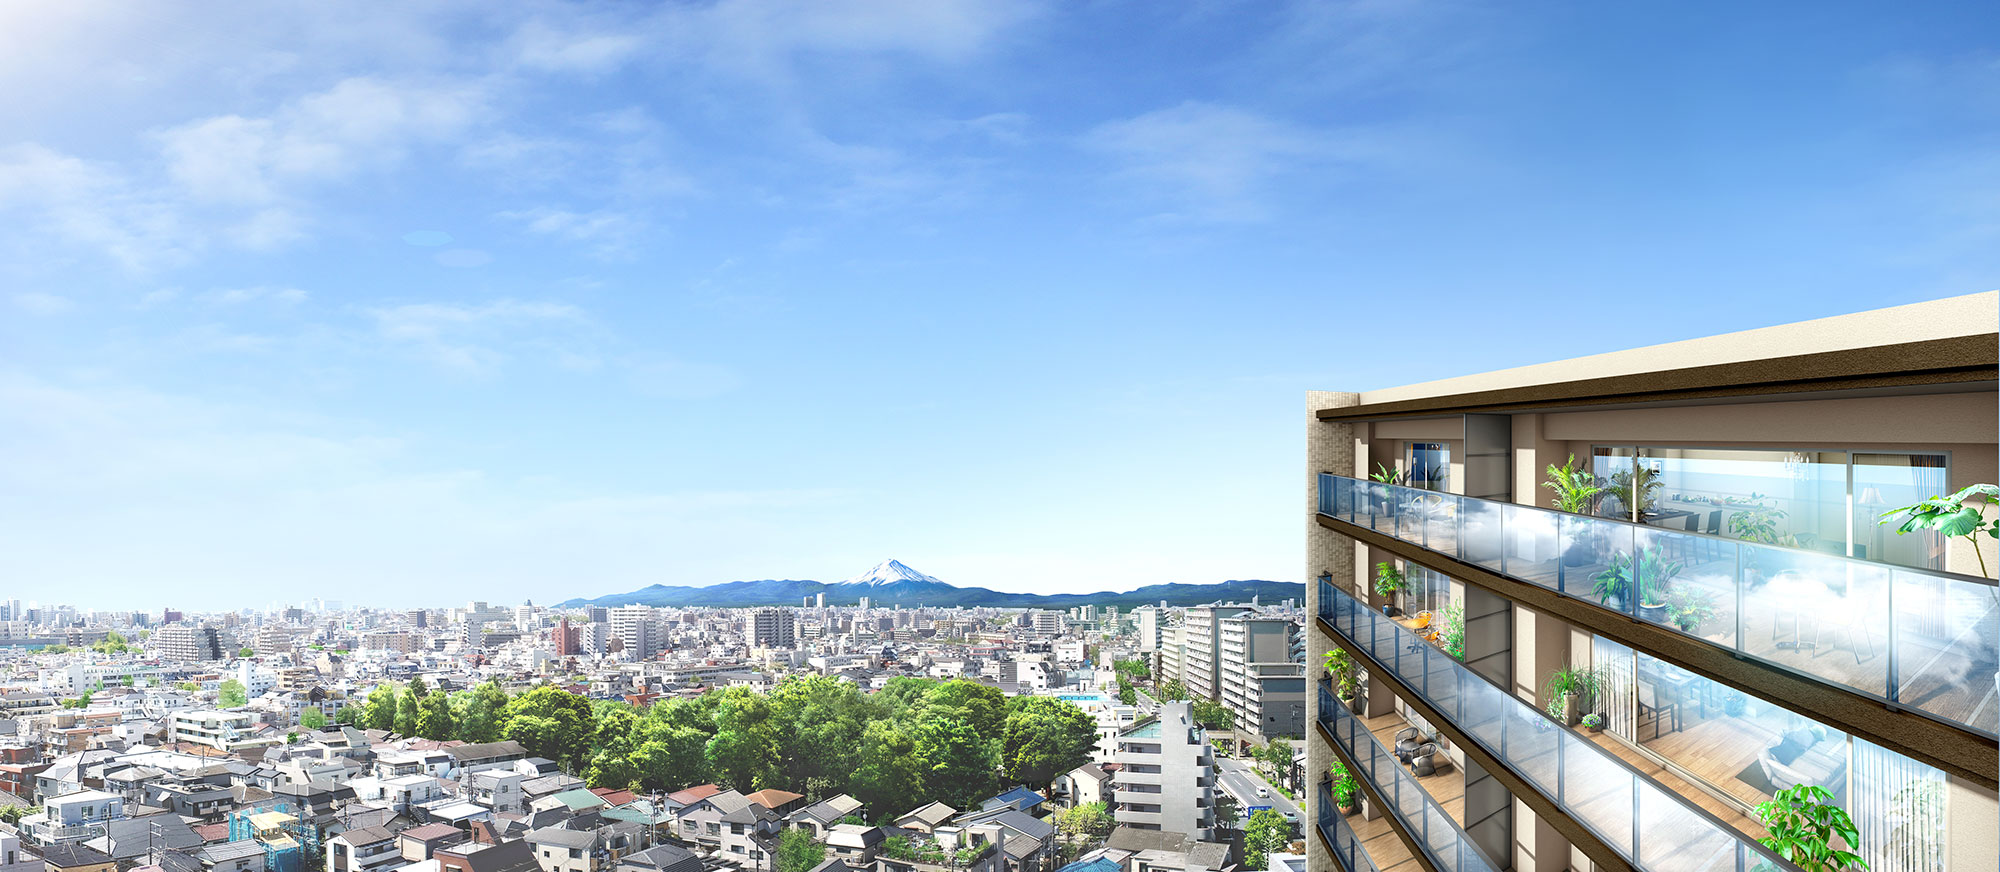 クレストラフィーネ板橋本町、南面に開けた開放感あふれる眺望